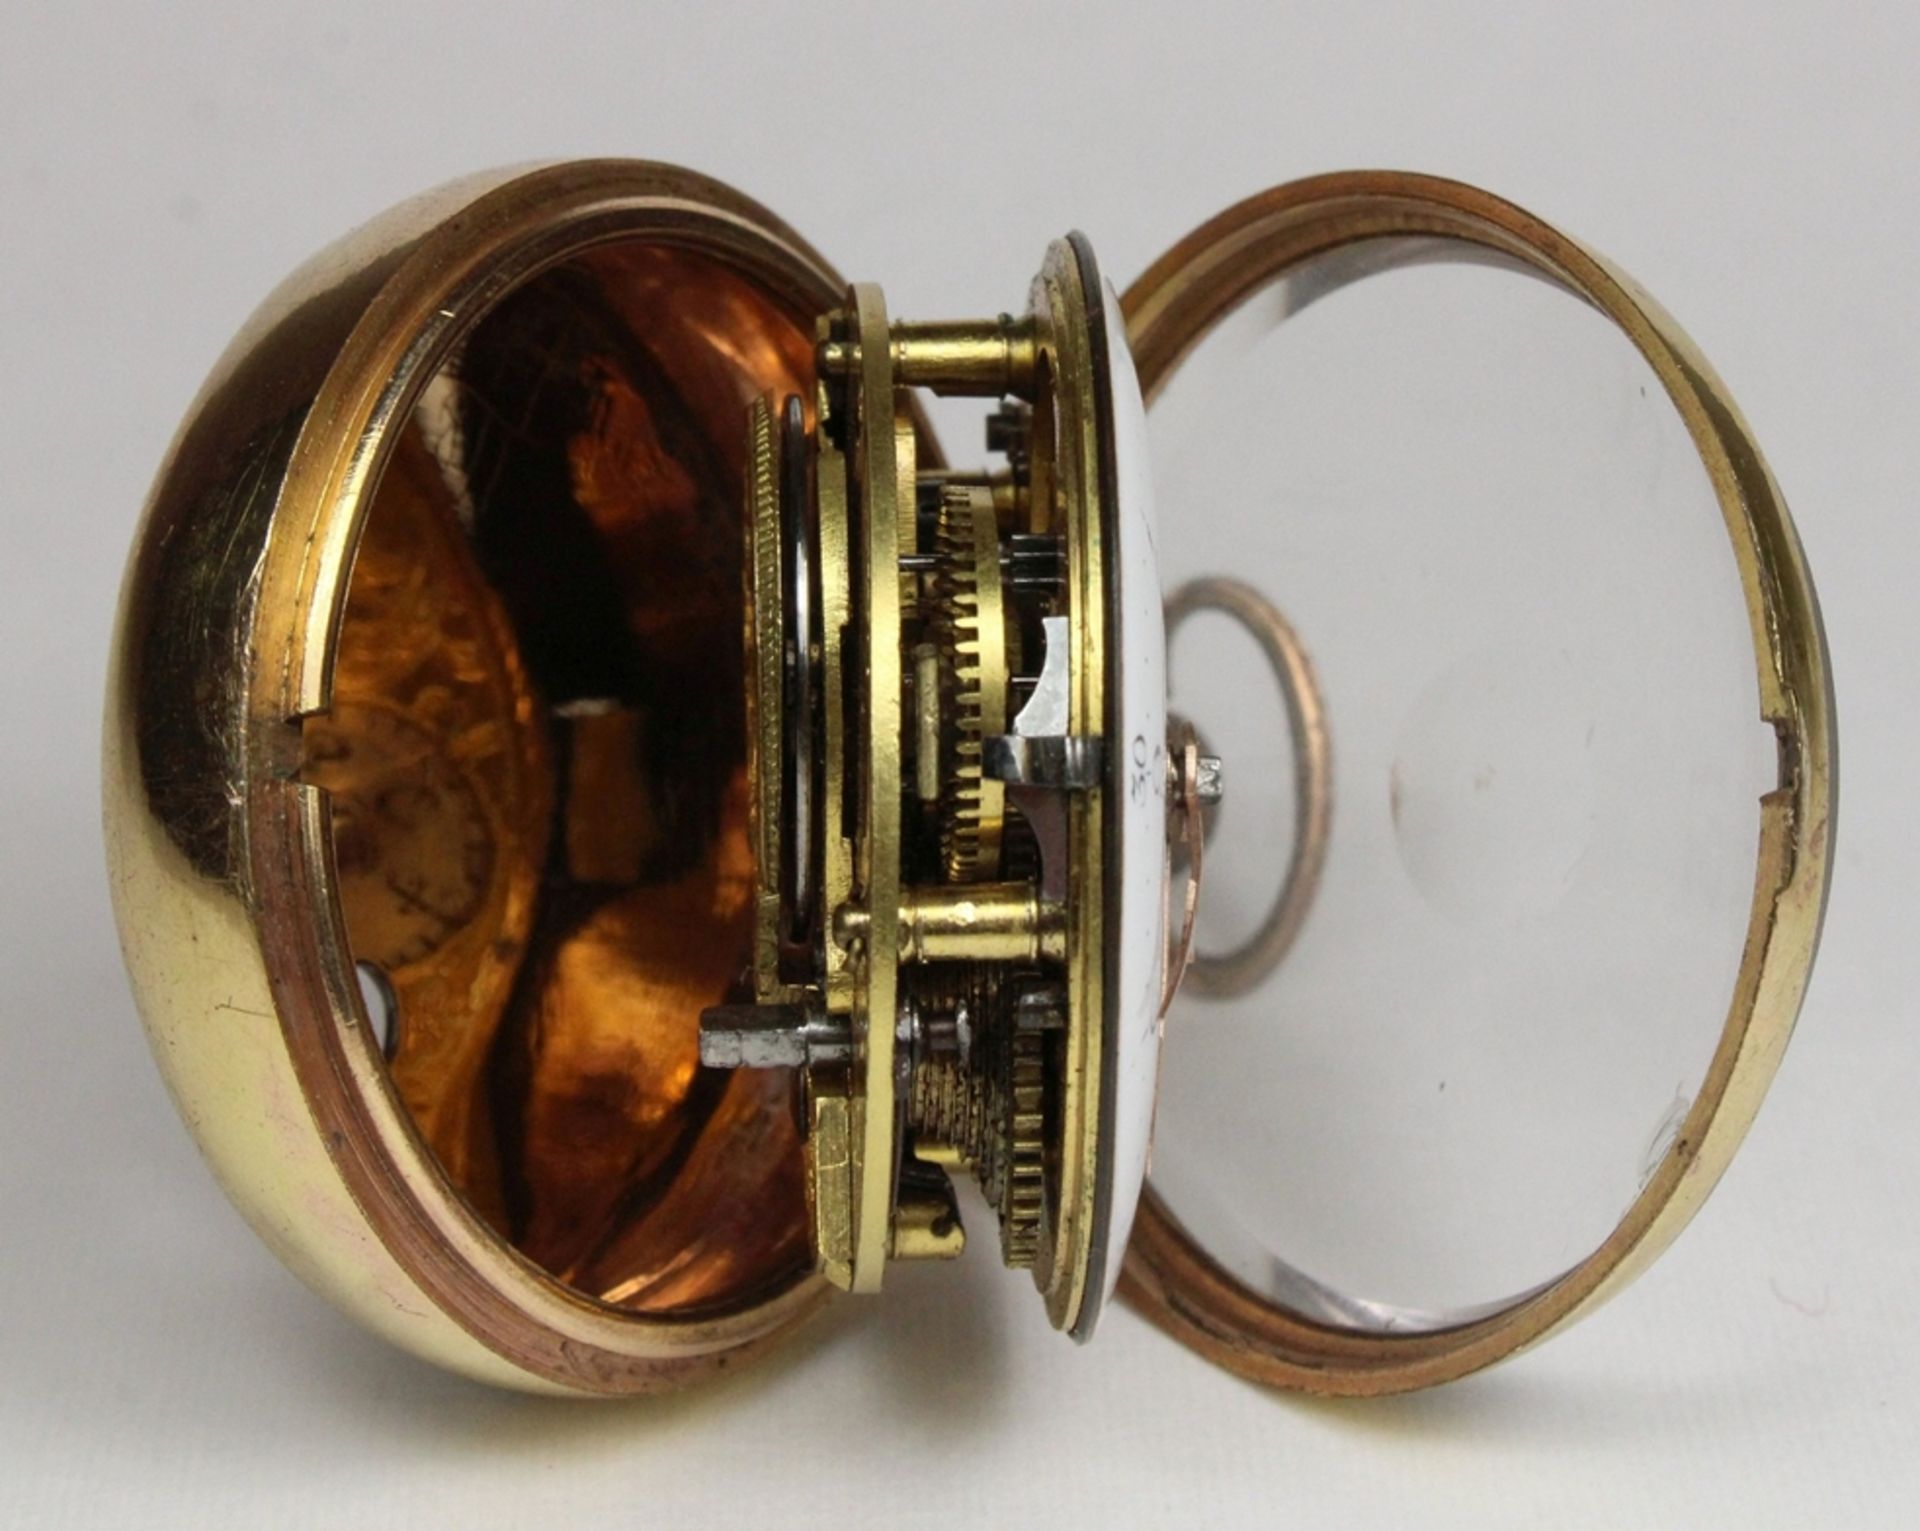 Vergoldete Spindeltaschenuhr mit bemalter Horngehäuse, um 1800-1820, Uhrmacher: Thomas Wilson, Lon - Image 4 of 4